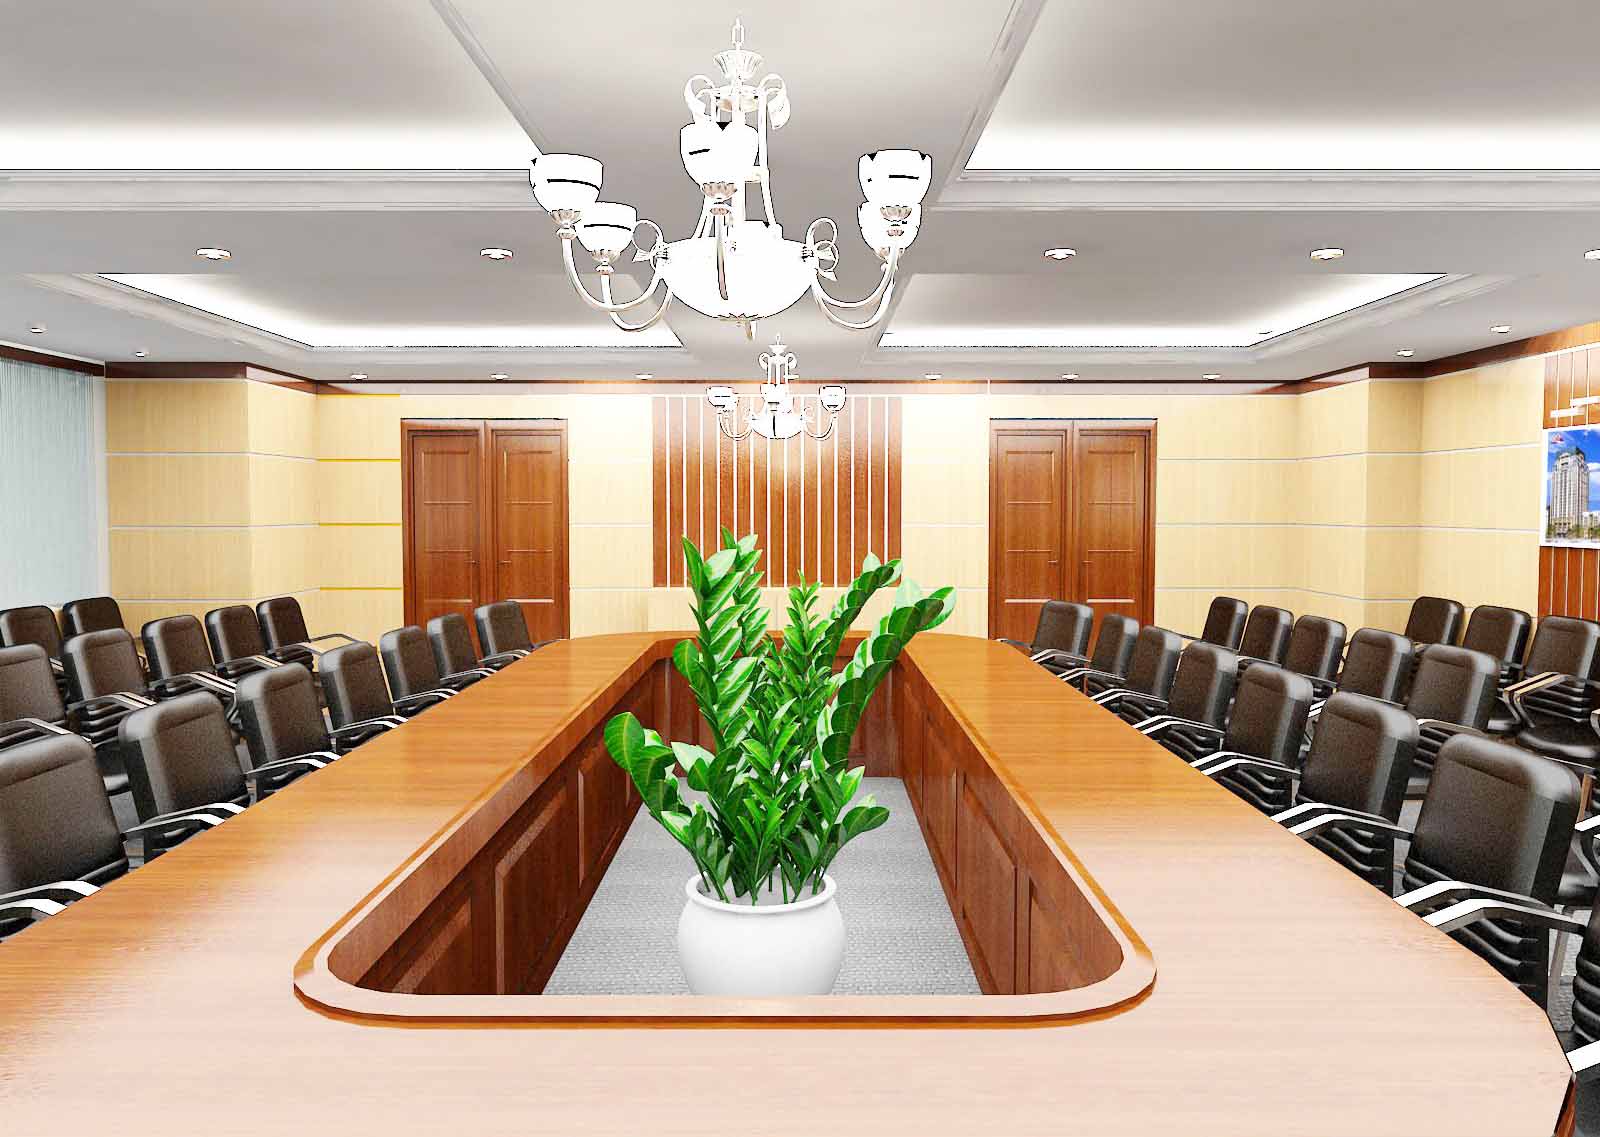 Lựa chọn những chiếc bàn họp phù hợp với không gian và tạo dựng sự thoải mái trong quá trình trao đổi công việc giúp tạo chất lượng cao trong công việc.